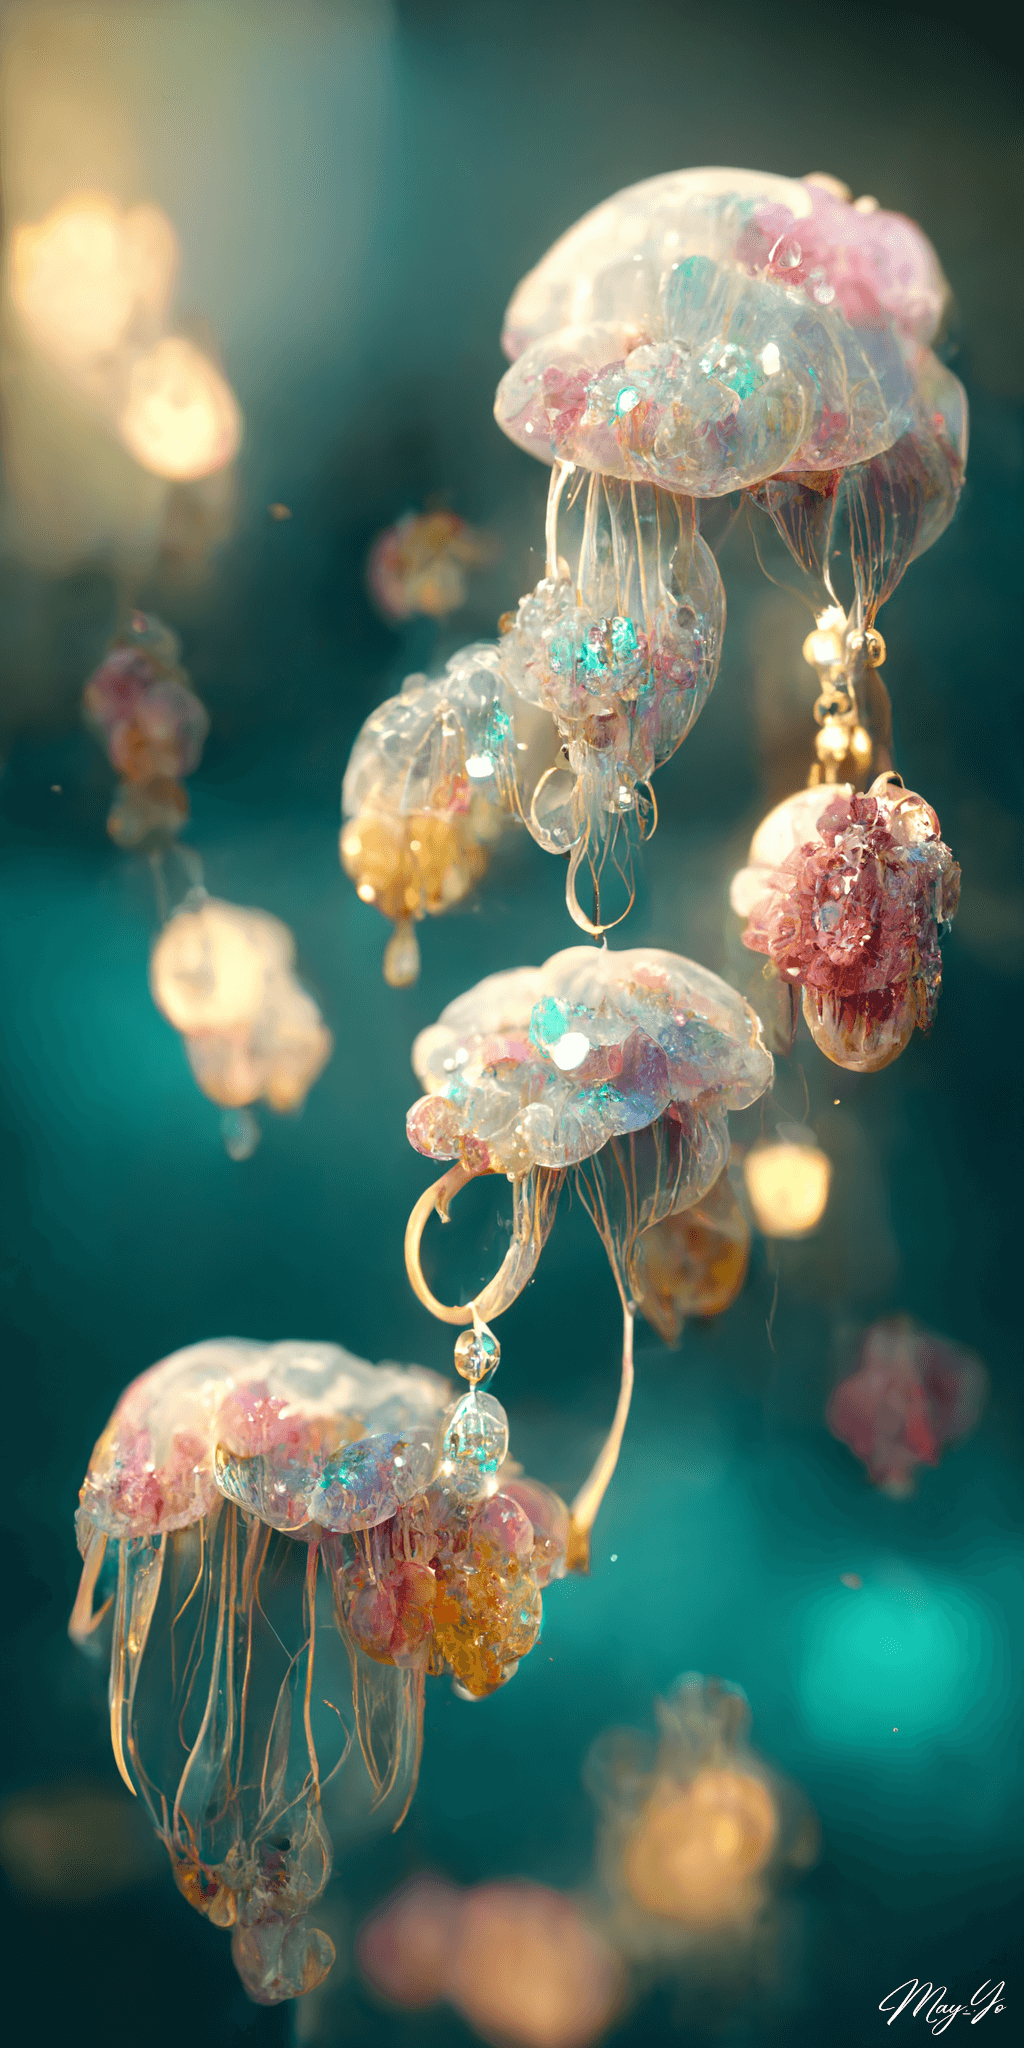 宝石でできたクラゲのイラスト待受 オパールカラー 白 黄色 ピンク 水色 幻想的な海の生き物のジュエリー AIイラスト壁紙 縦長画像 jellyfish jewerly illustration luxery romantic